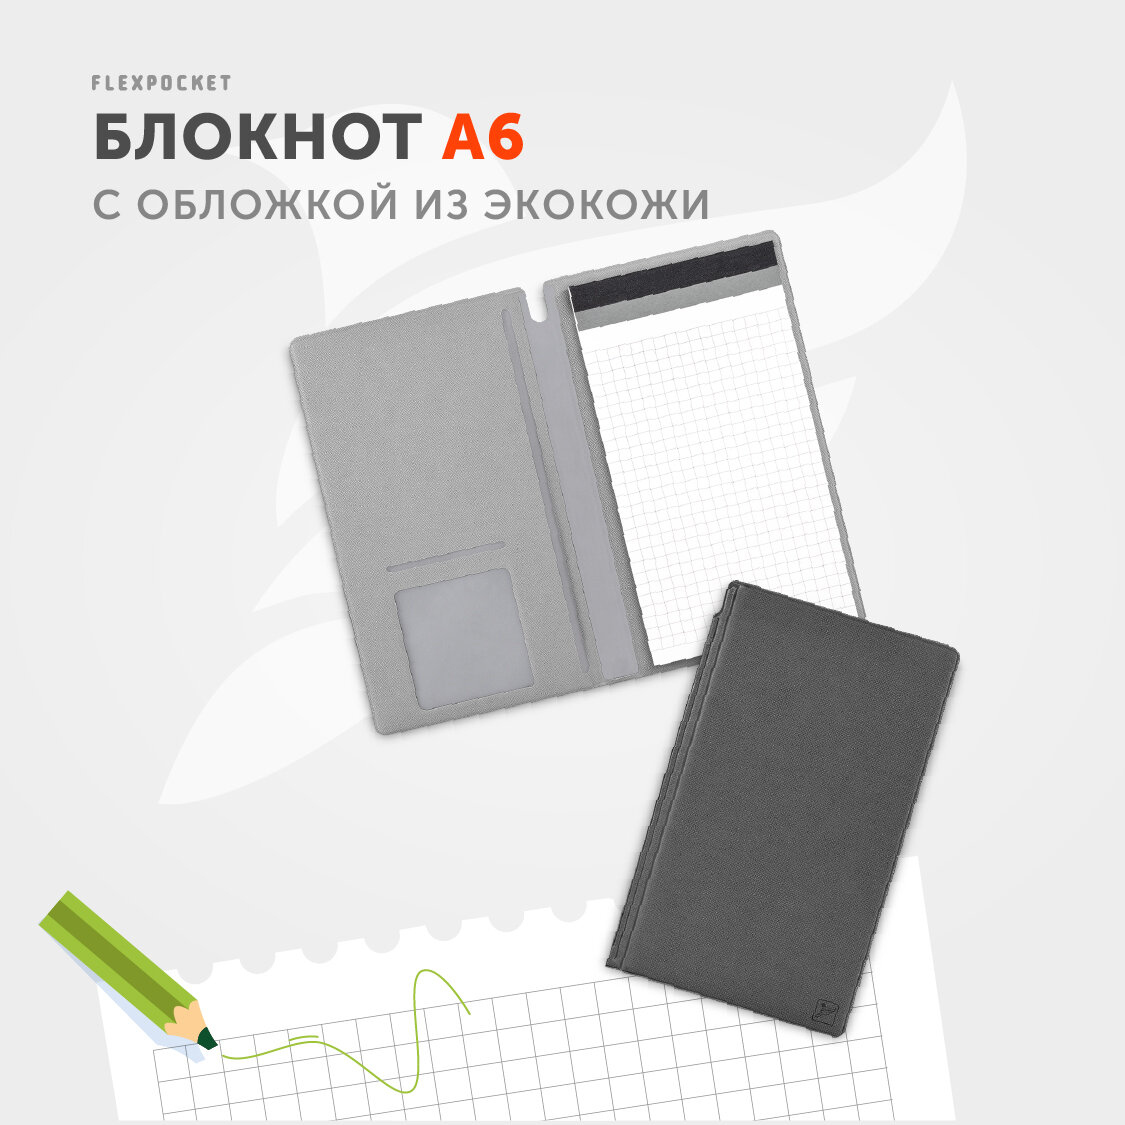 Блокнот-планшет Flexpocket в обложке из экокожи Saffiano, формат А6, цвет Темно-серый